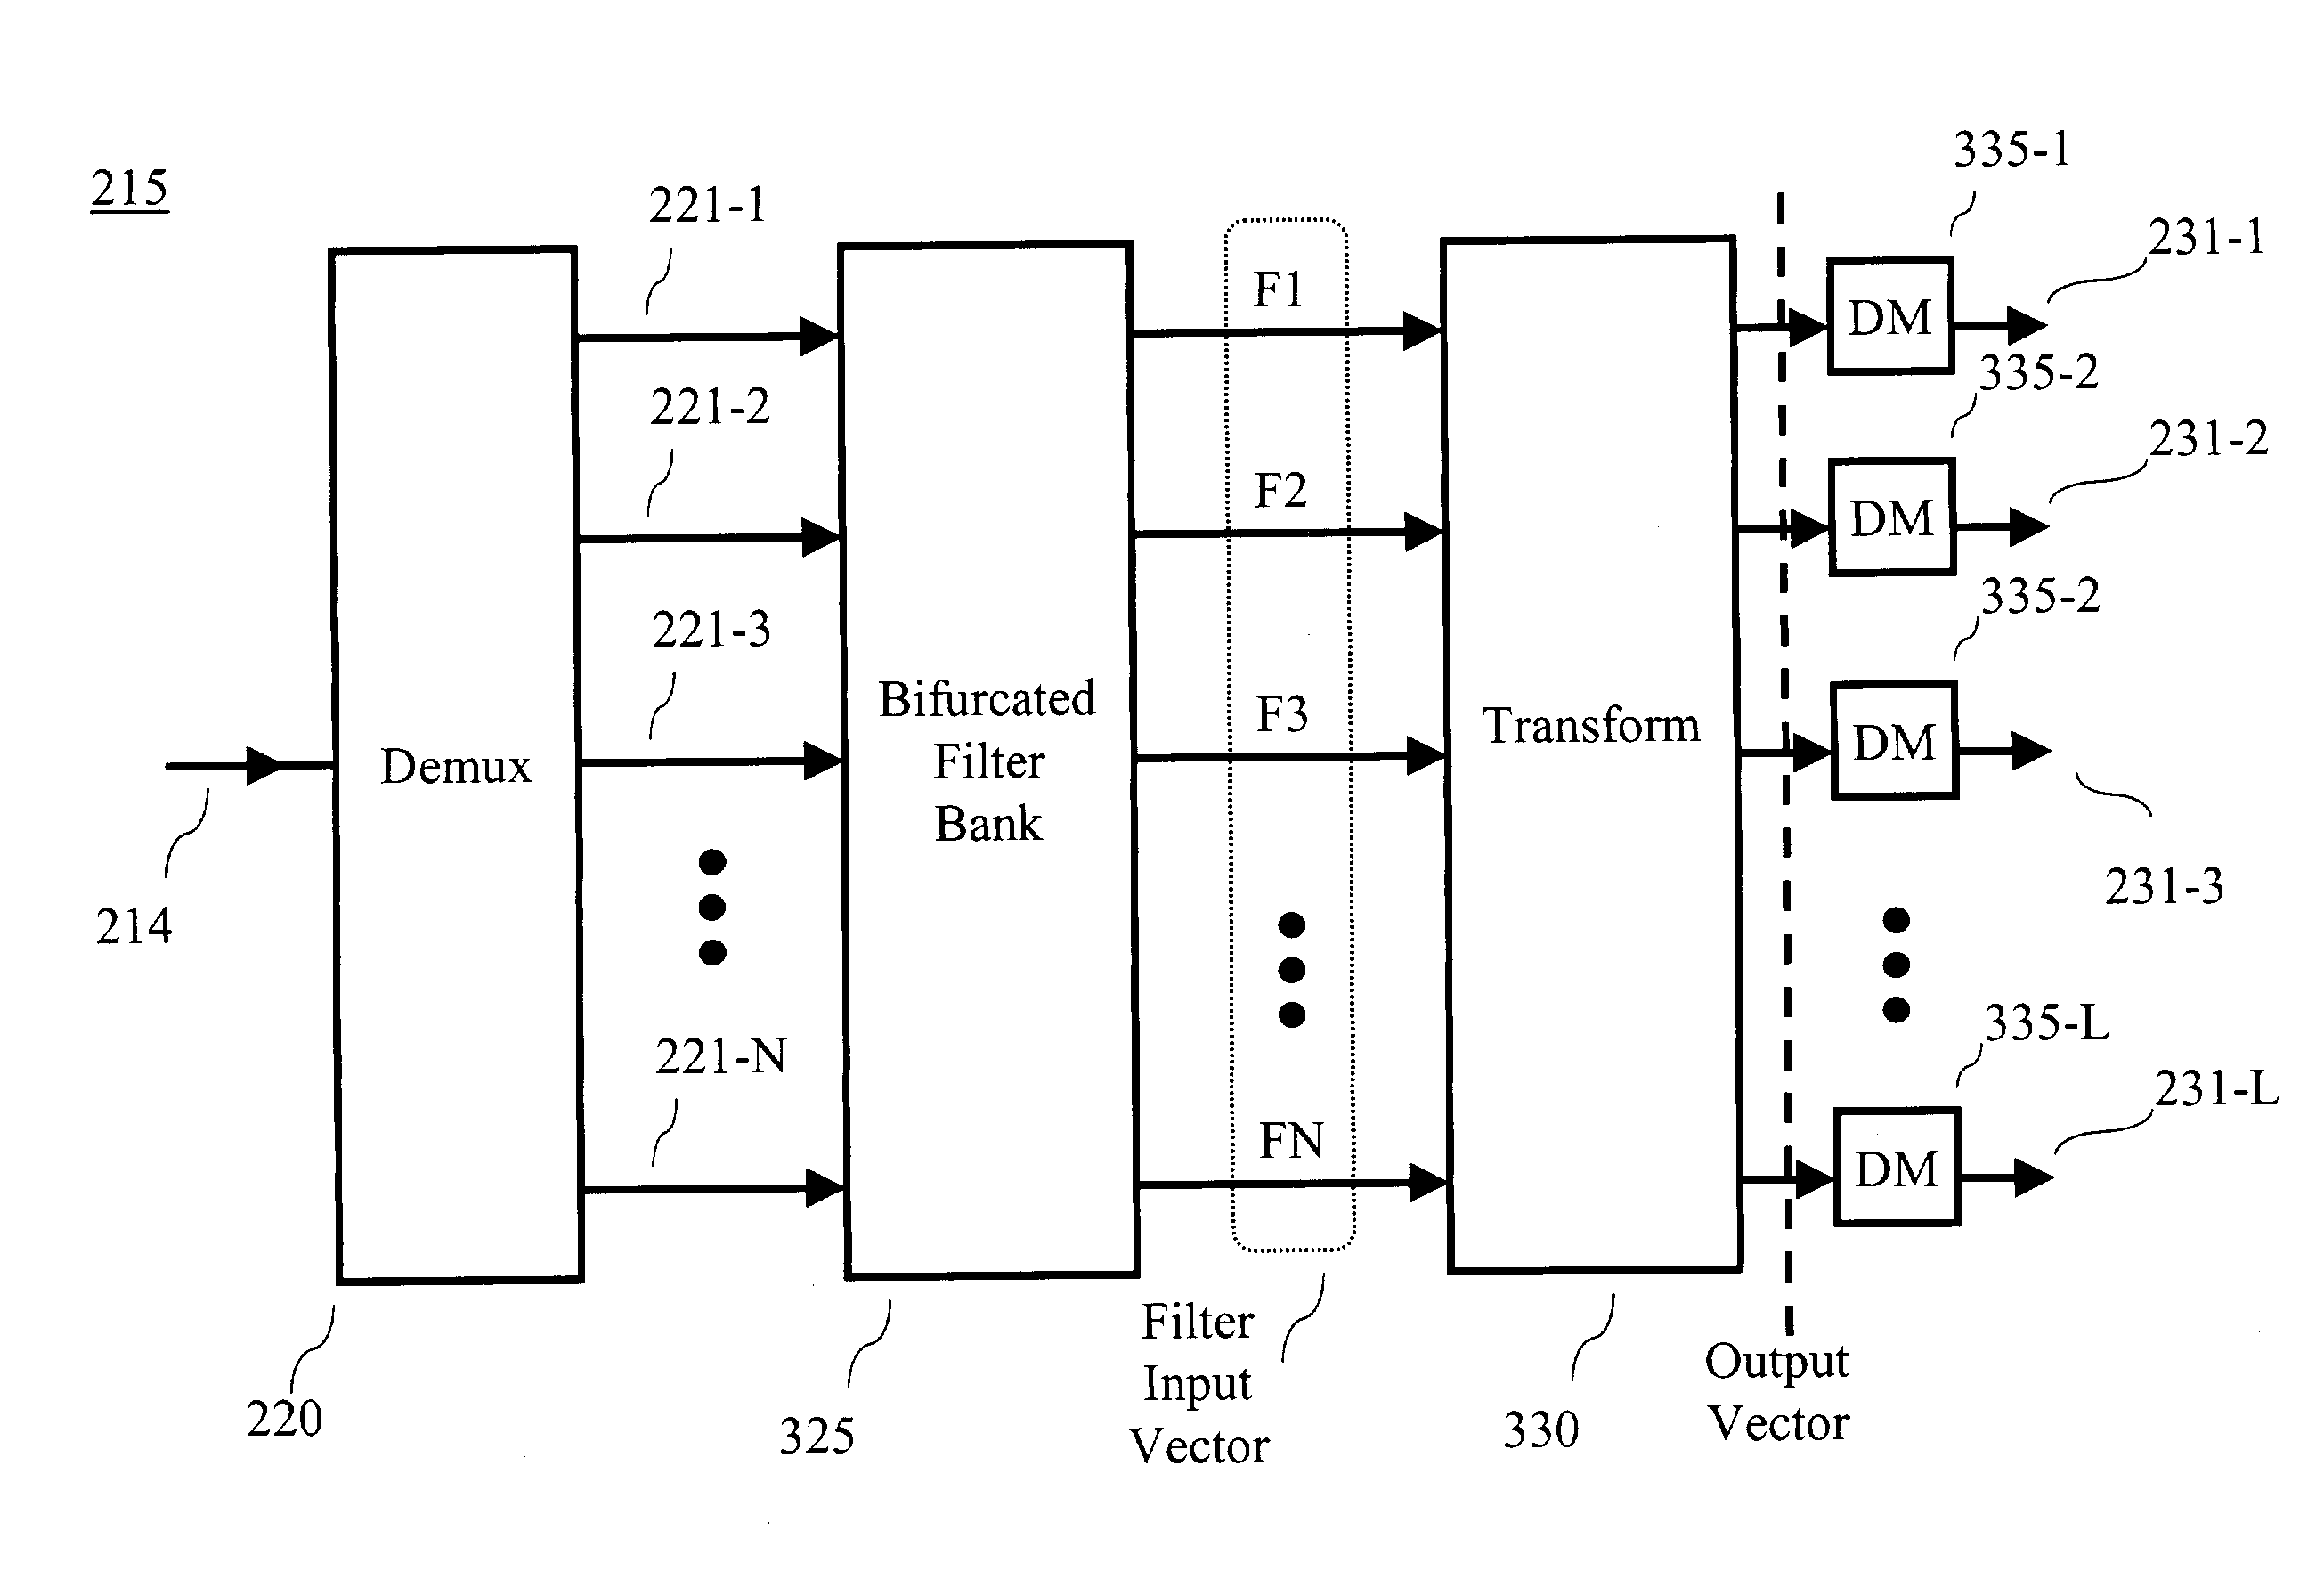 Multi-channel tuner using a discrete cosine transform